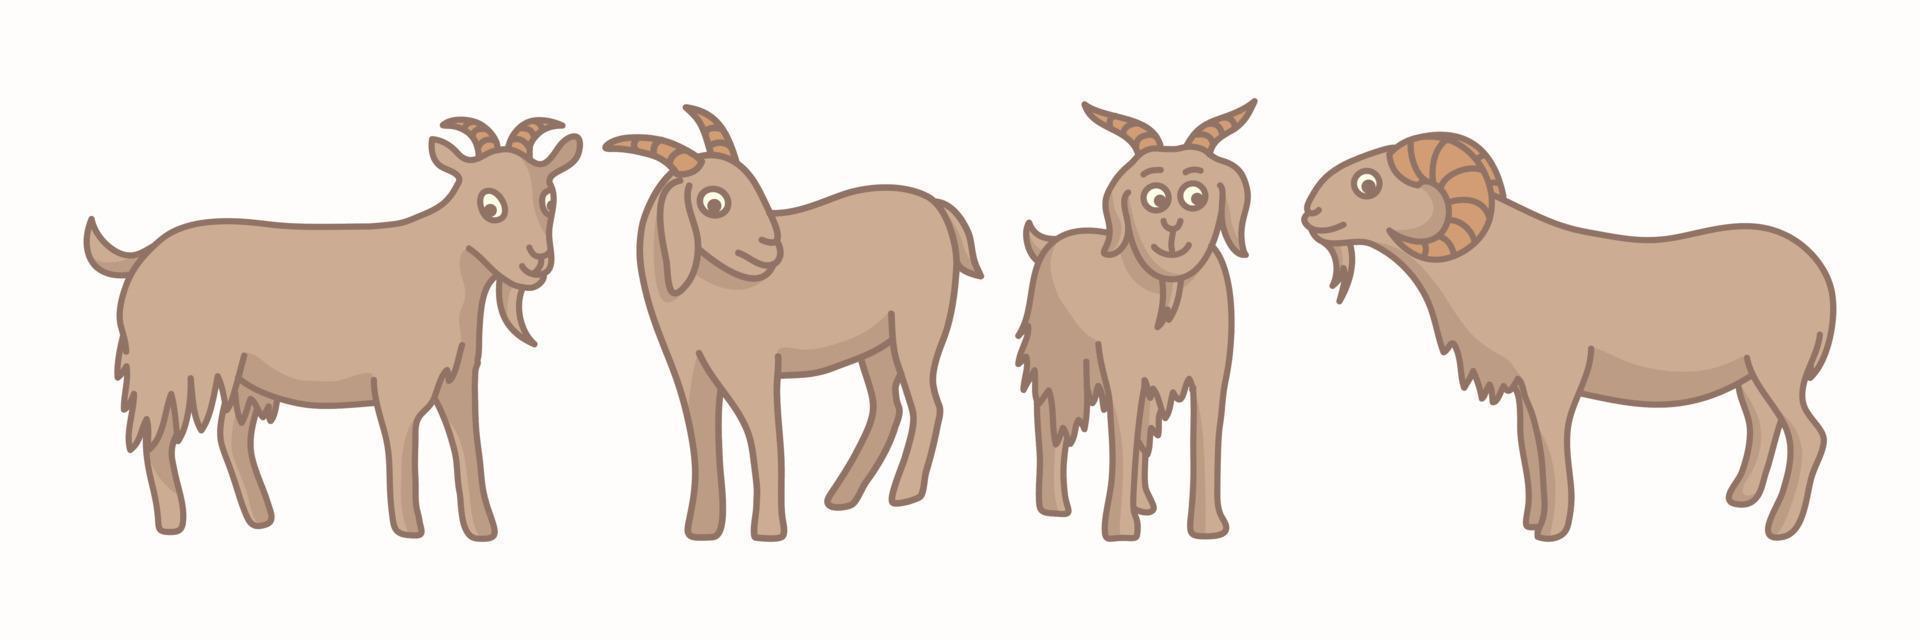 bonito cabra animal personagem desenho coleção desenho ornamento gráfico de vetor